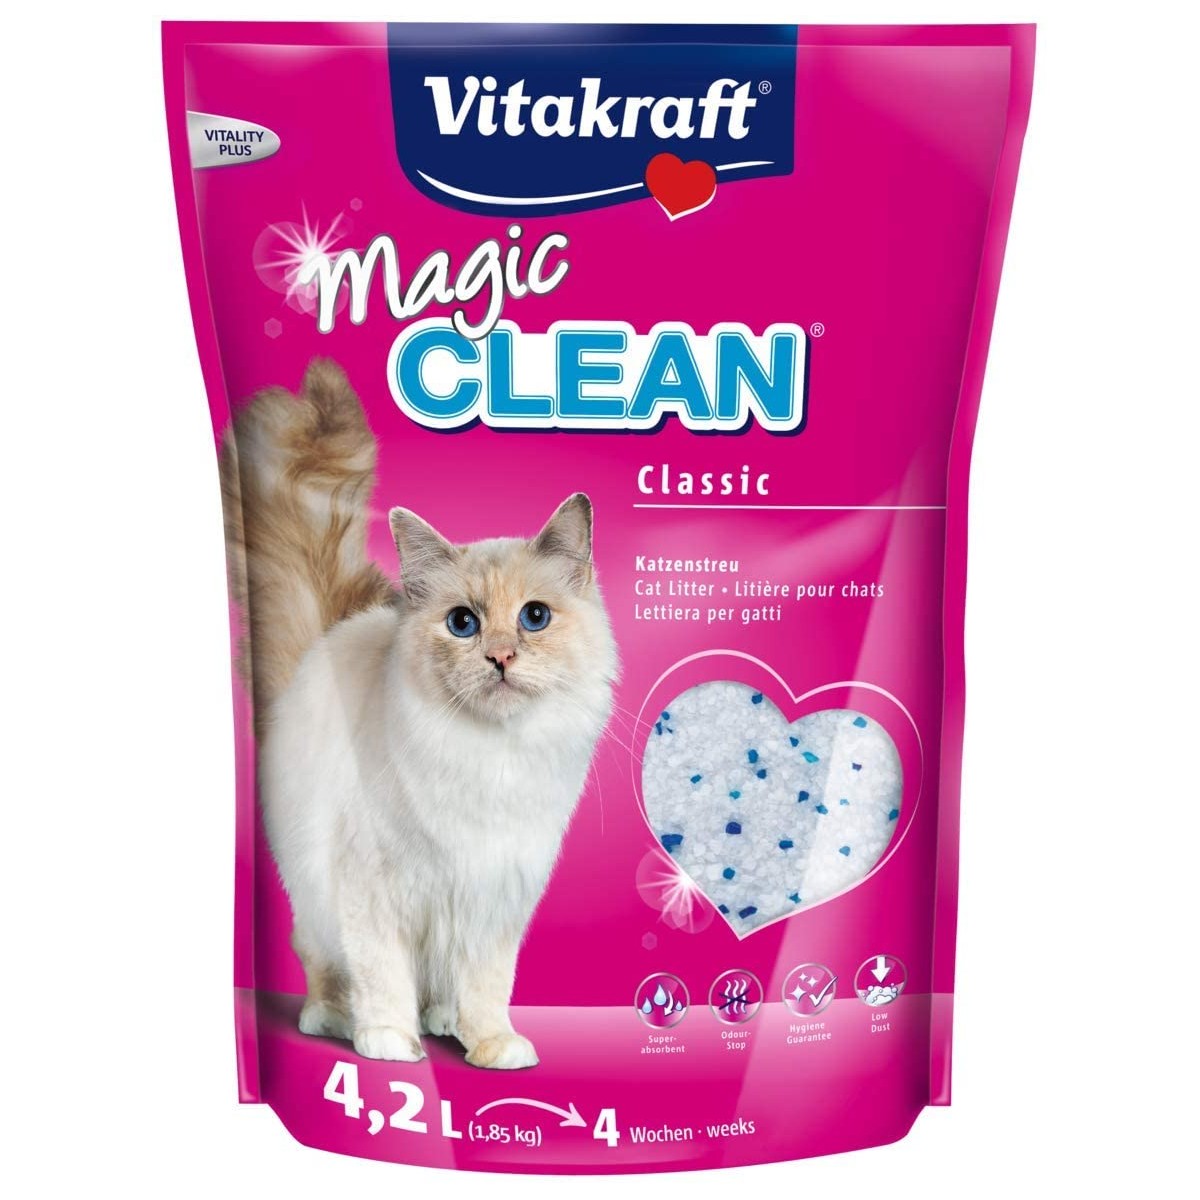 Lettiera per gatti Magic Clean - Vitakraft, senza agrumi